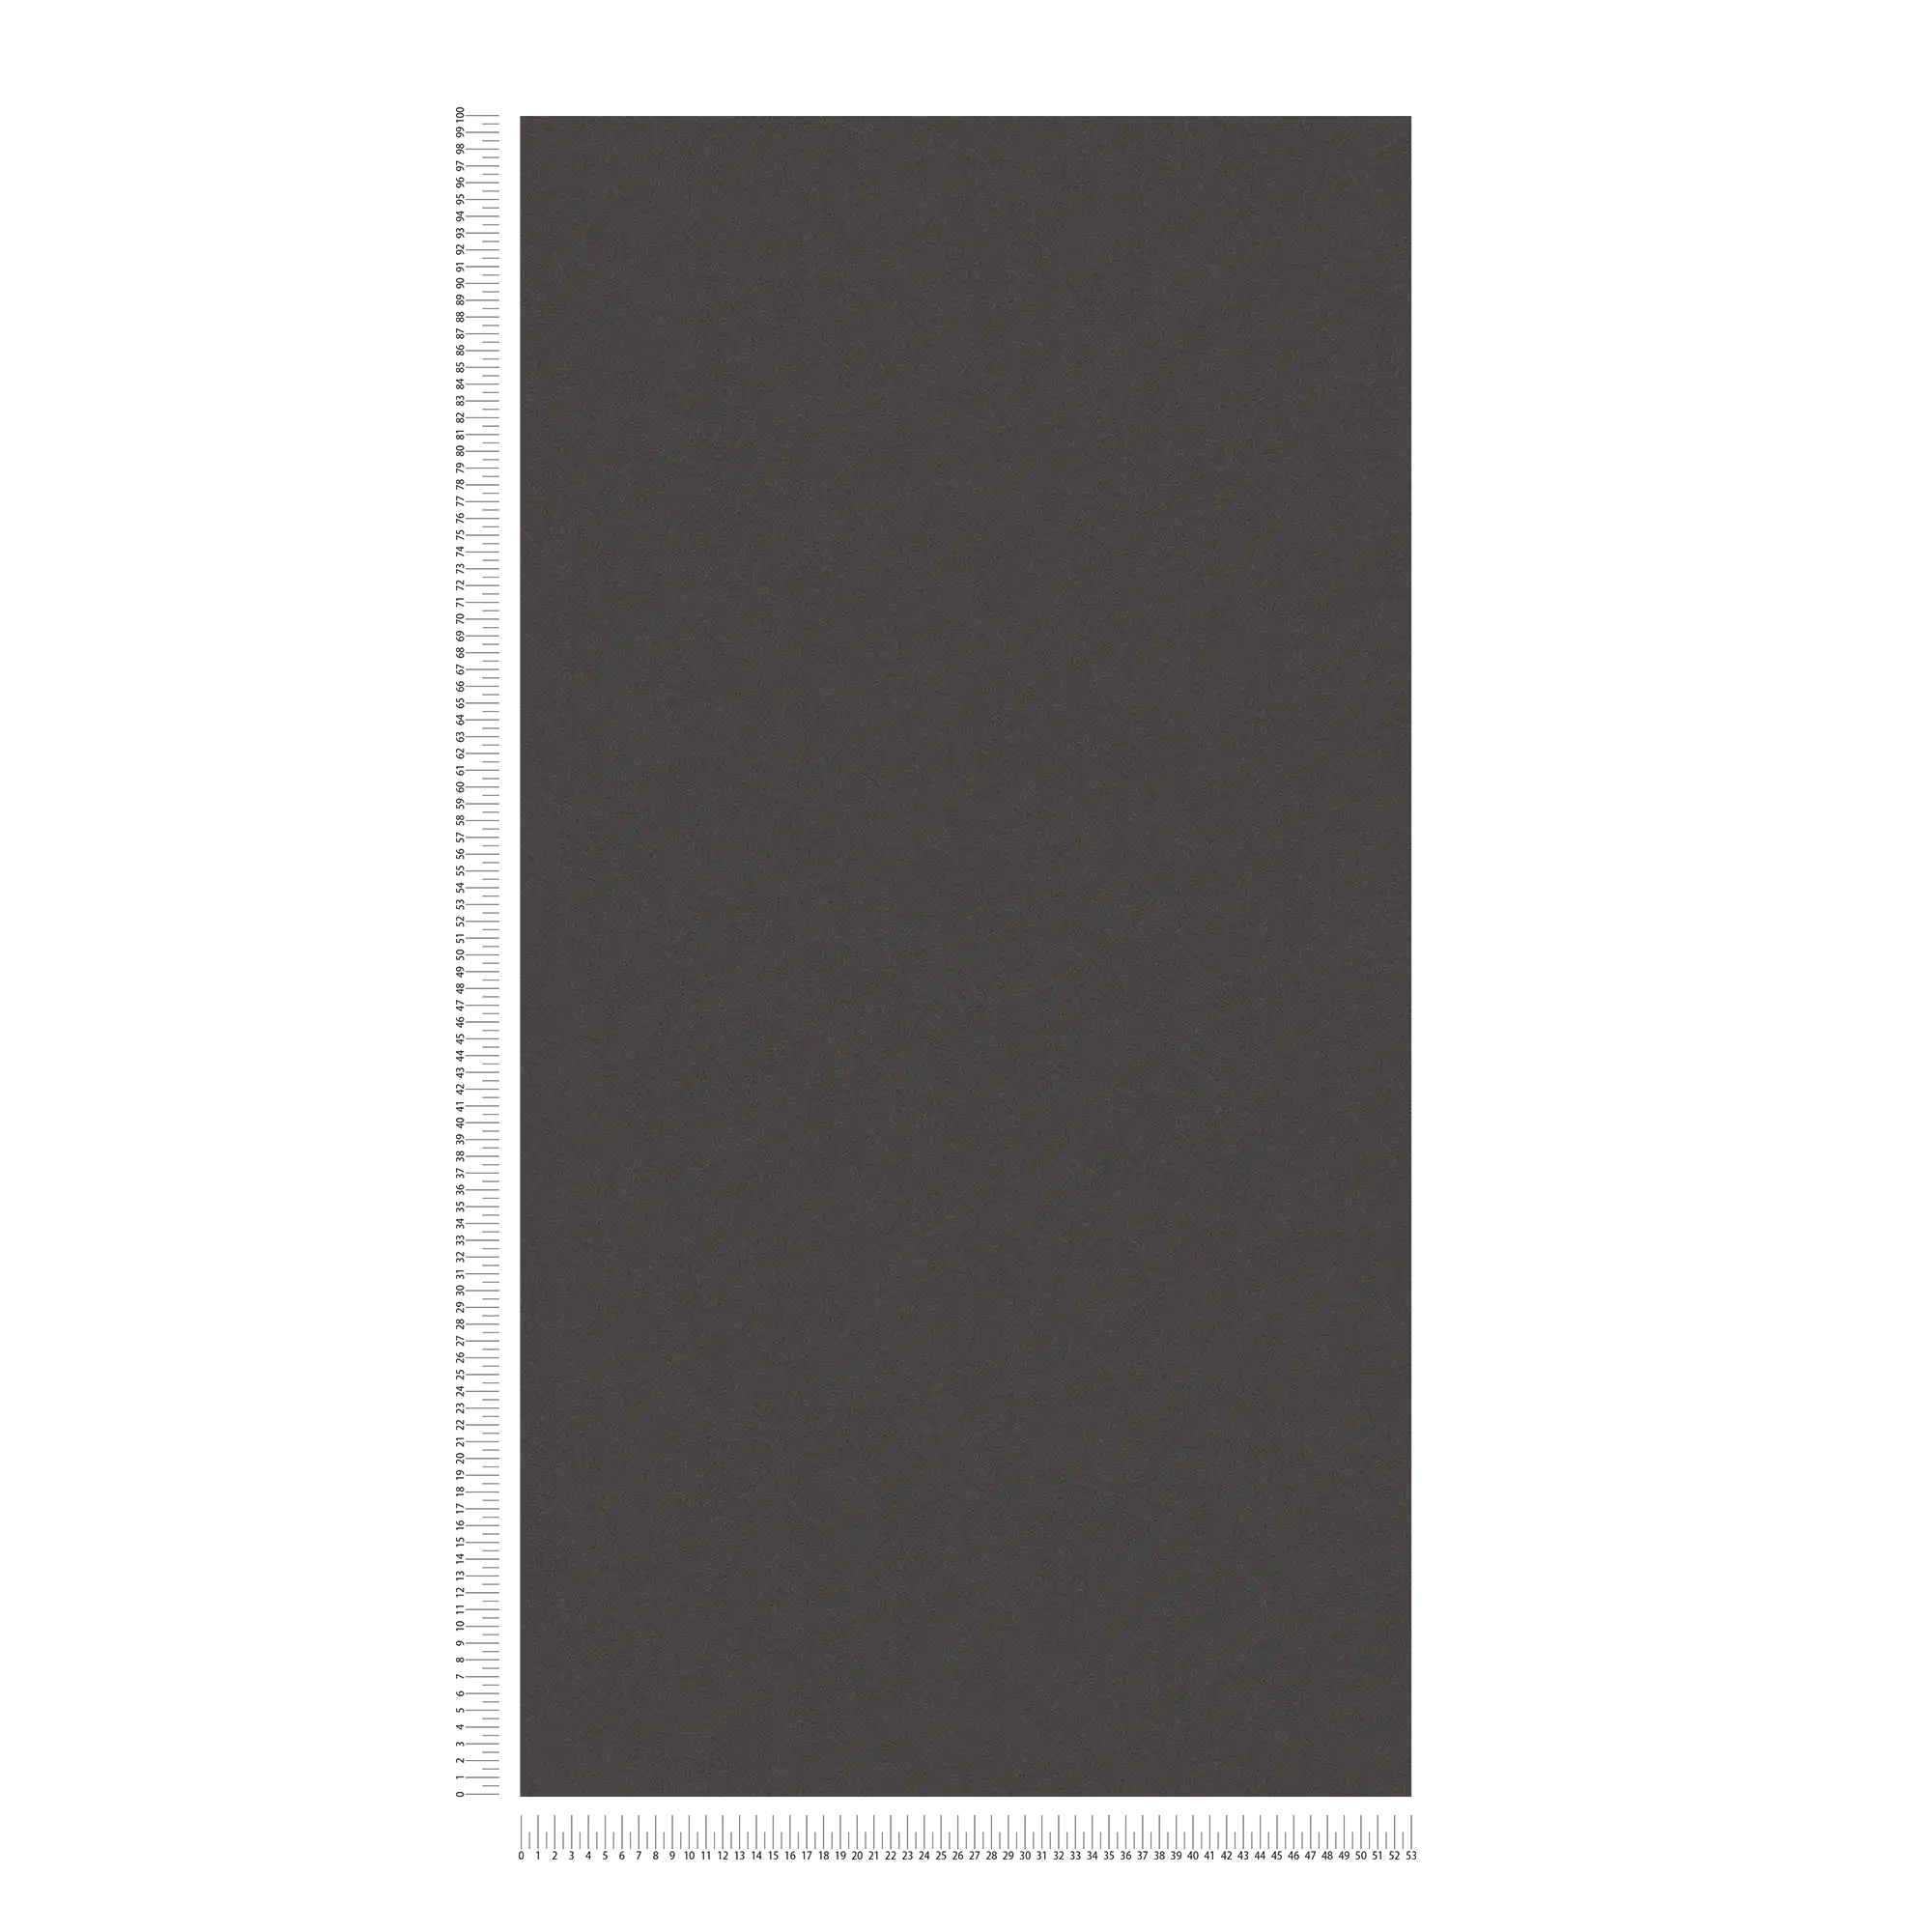             Plain wallpaper with subtle surface texture - black
        